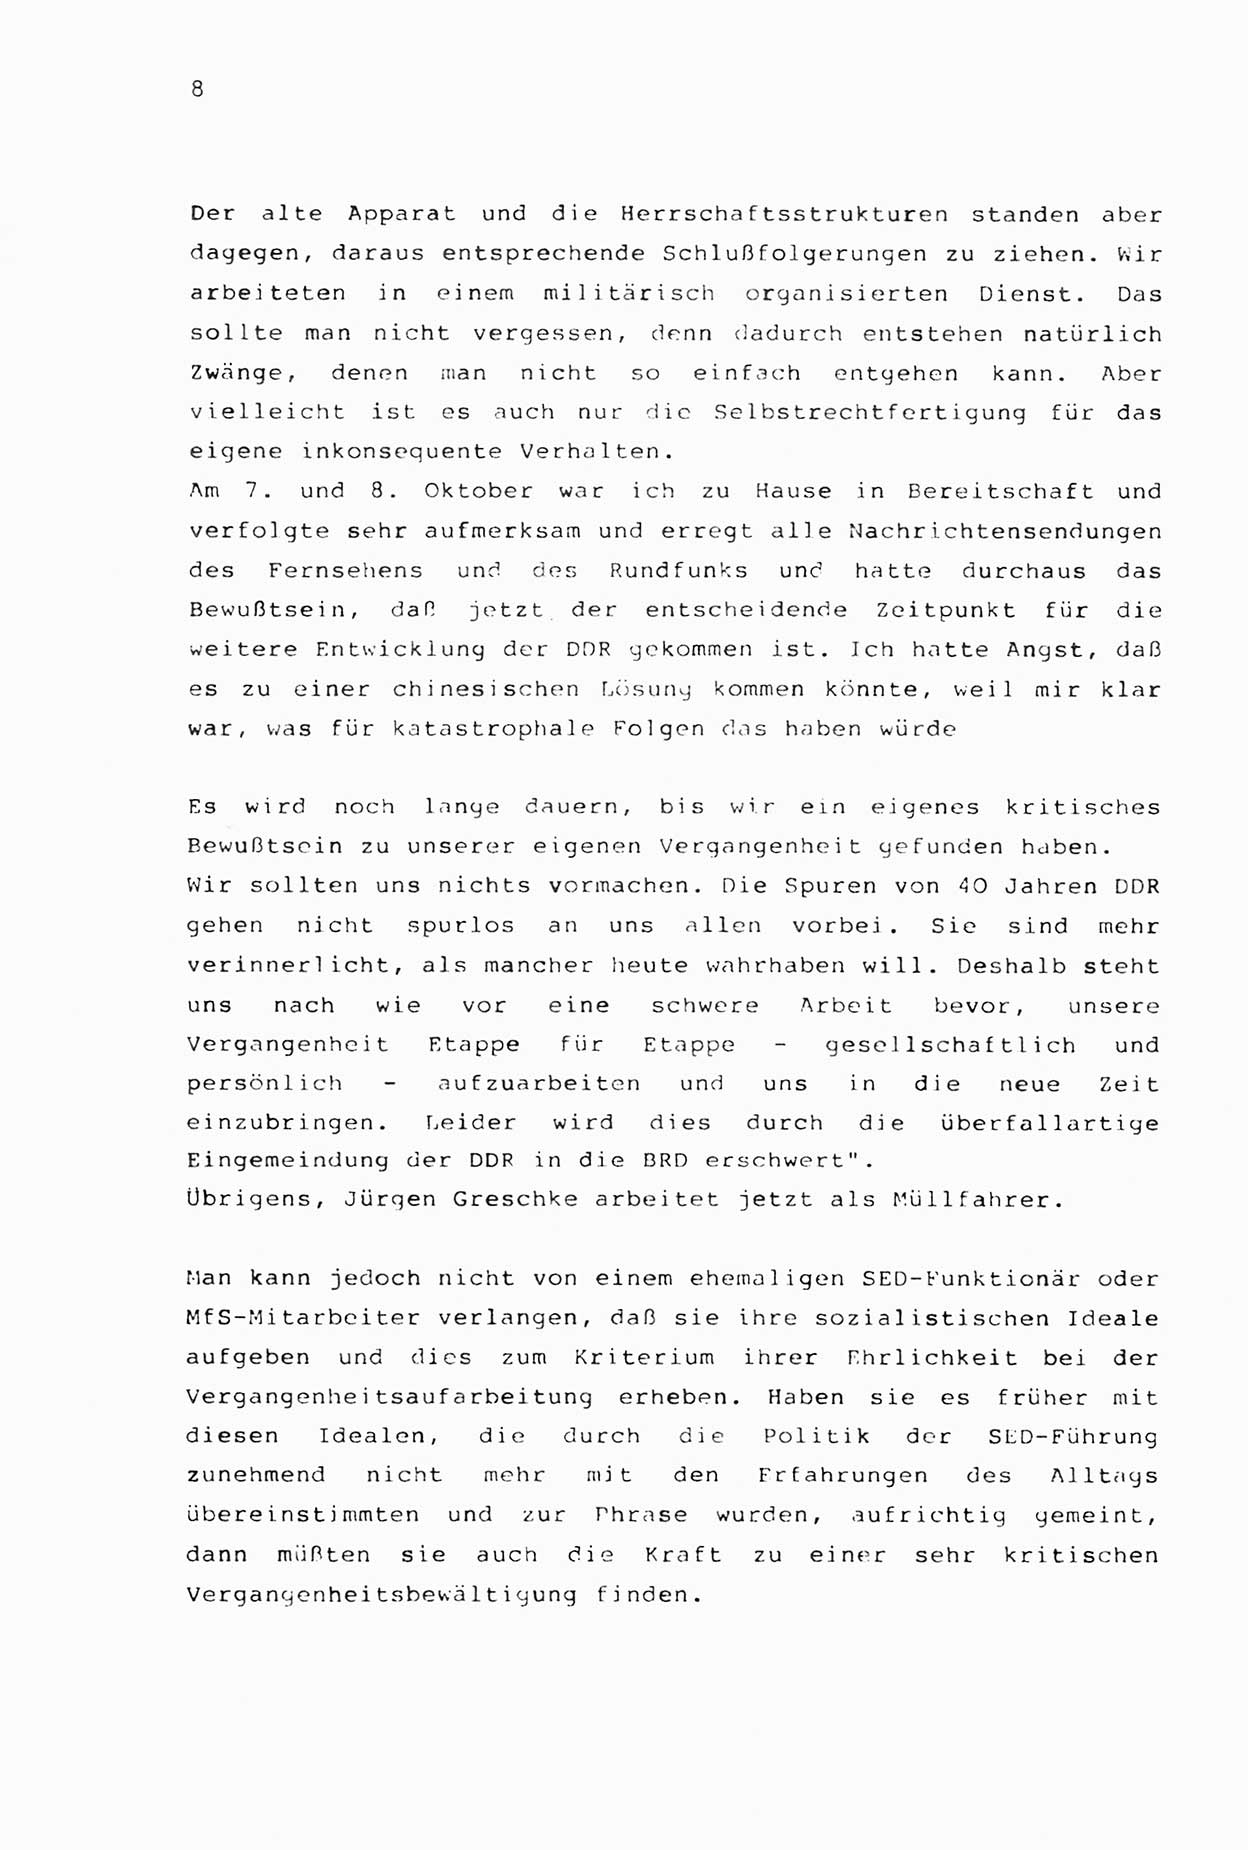 Zwie-Gespräch, Beiträge zur Aufarbeitung der Stasi-Vergangenheit [Deutsche Demokratische Republik (DDR)], Ausgabe Nr. 2, Berlin 1991, Seite 8 (Zwie-Gespr. Ausg. 2 1991, S. 8)